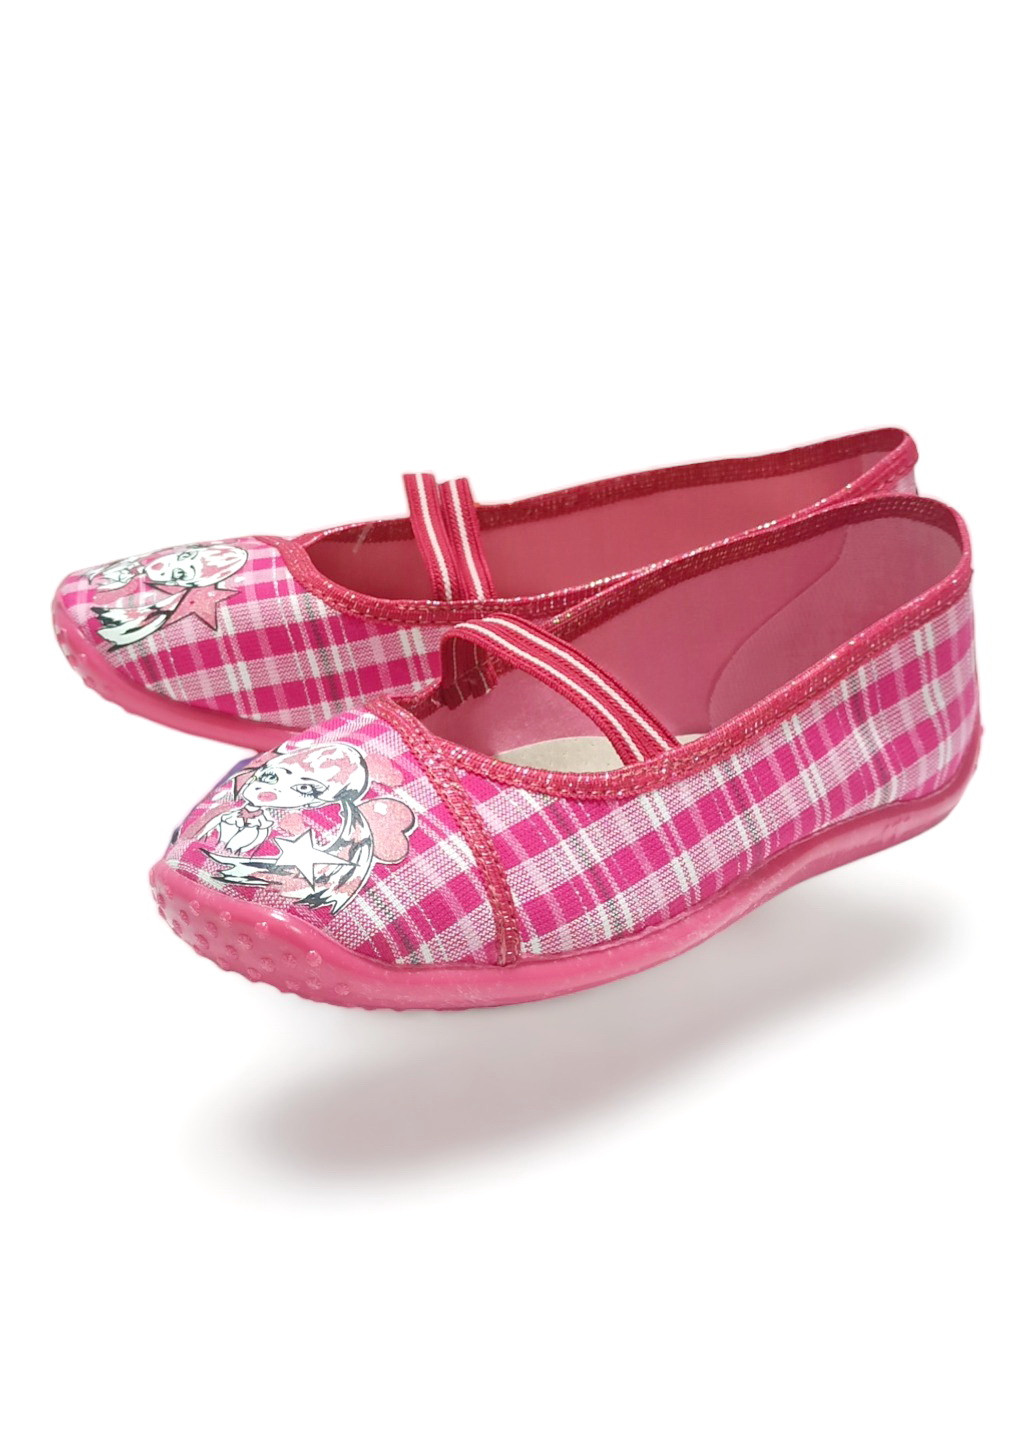 Розовые тапочки для девочки текстильные sylwia 156 р.33 (21см) розовые Raweks с аппликацией